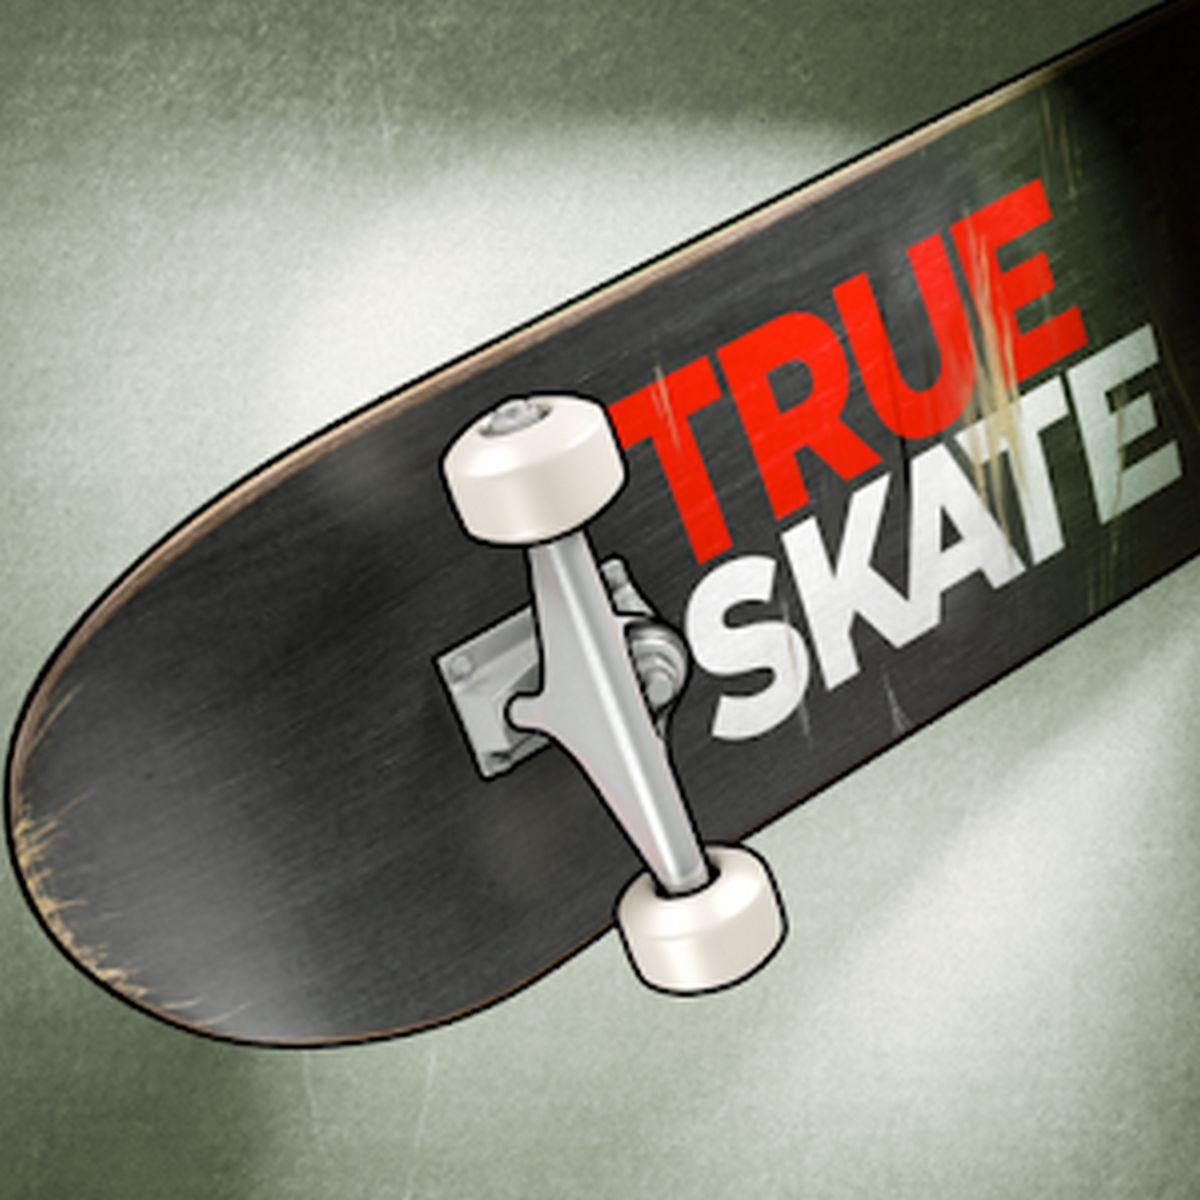 True Skate APK MOD v1.5.26 (Todo Desbloqueado)